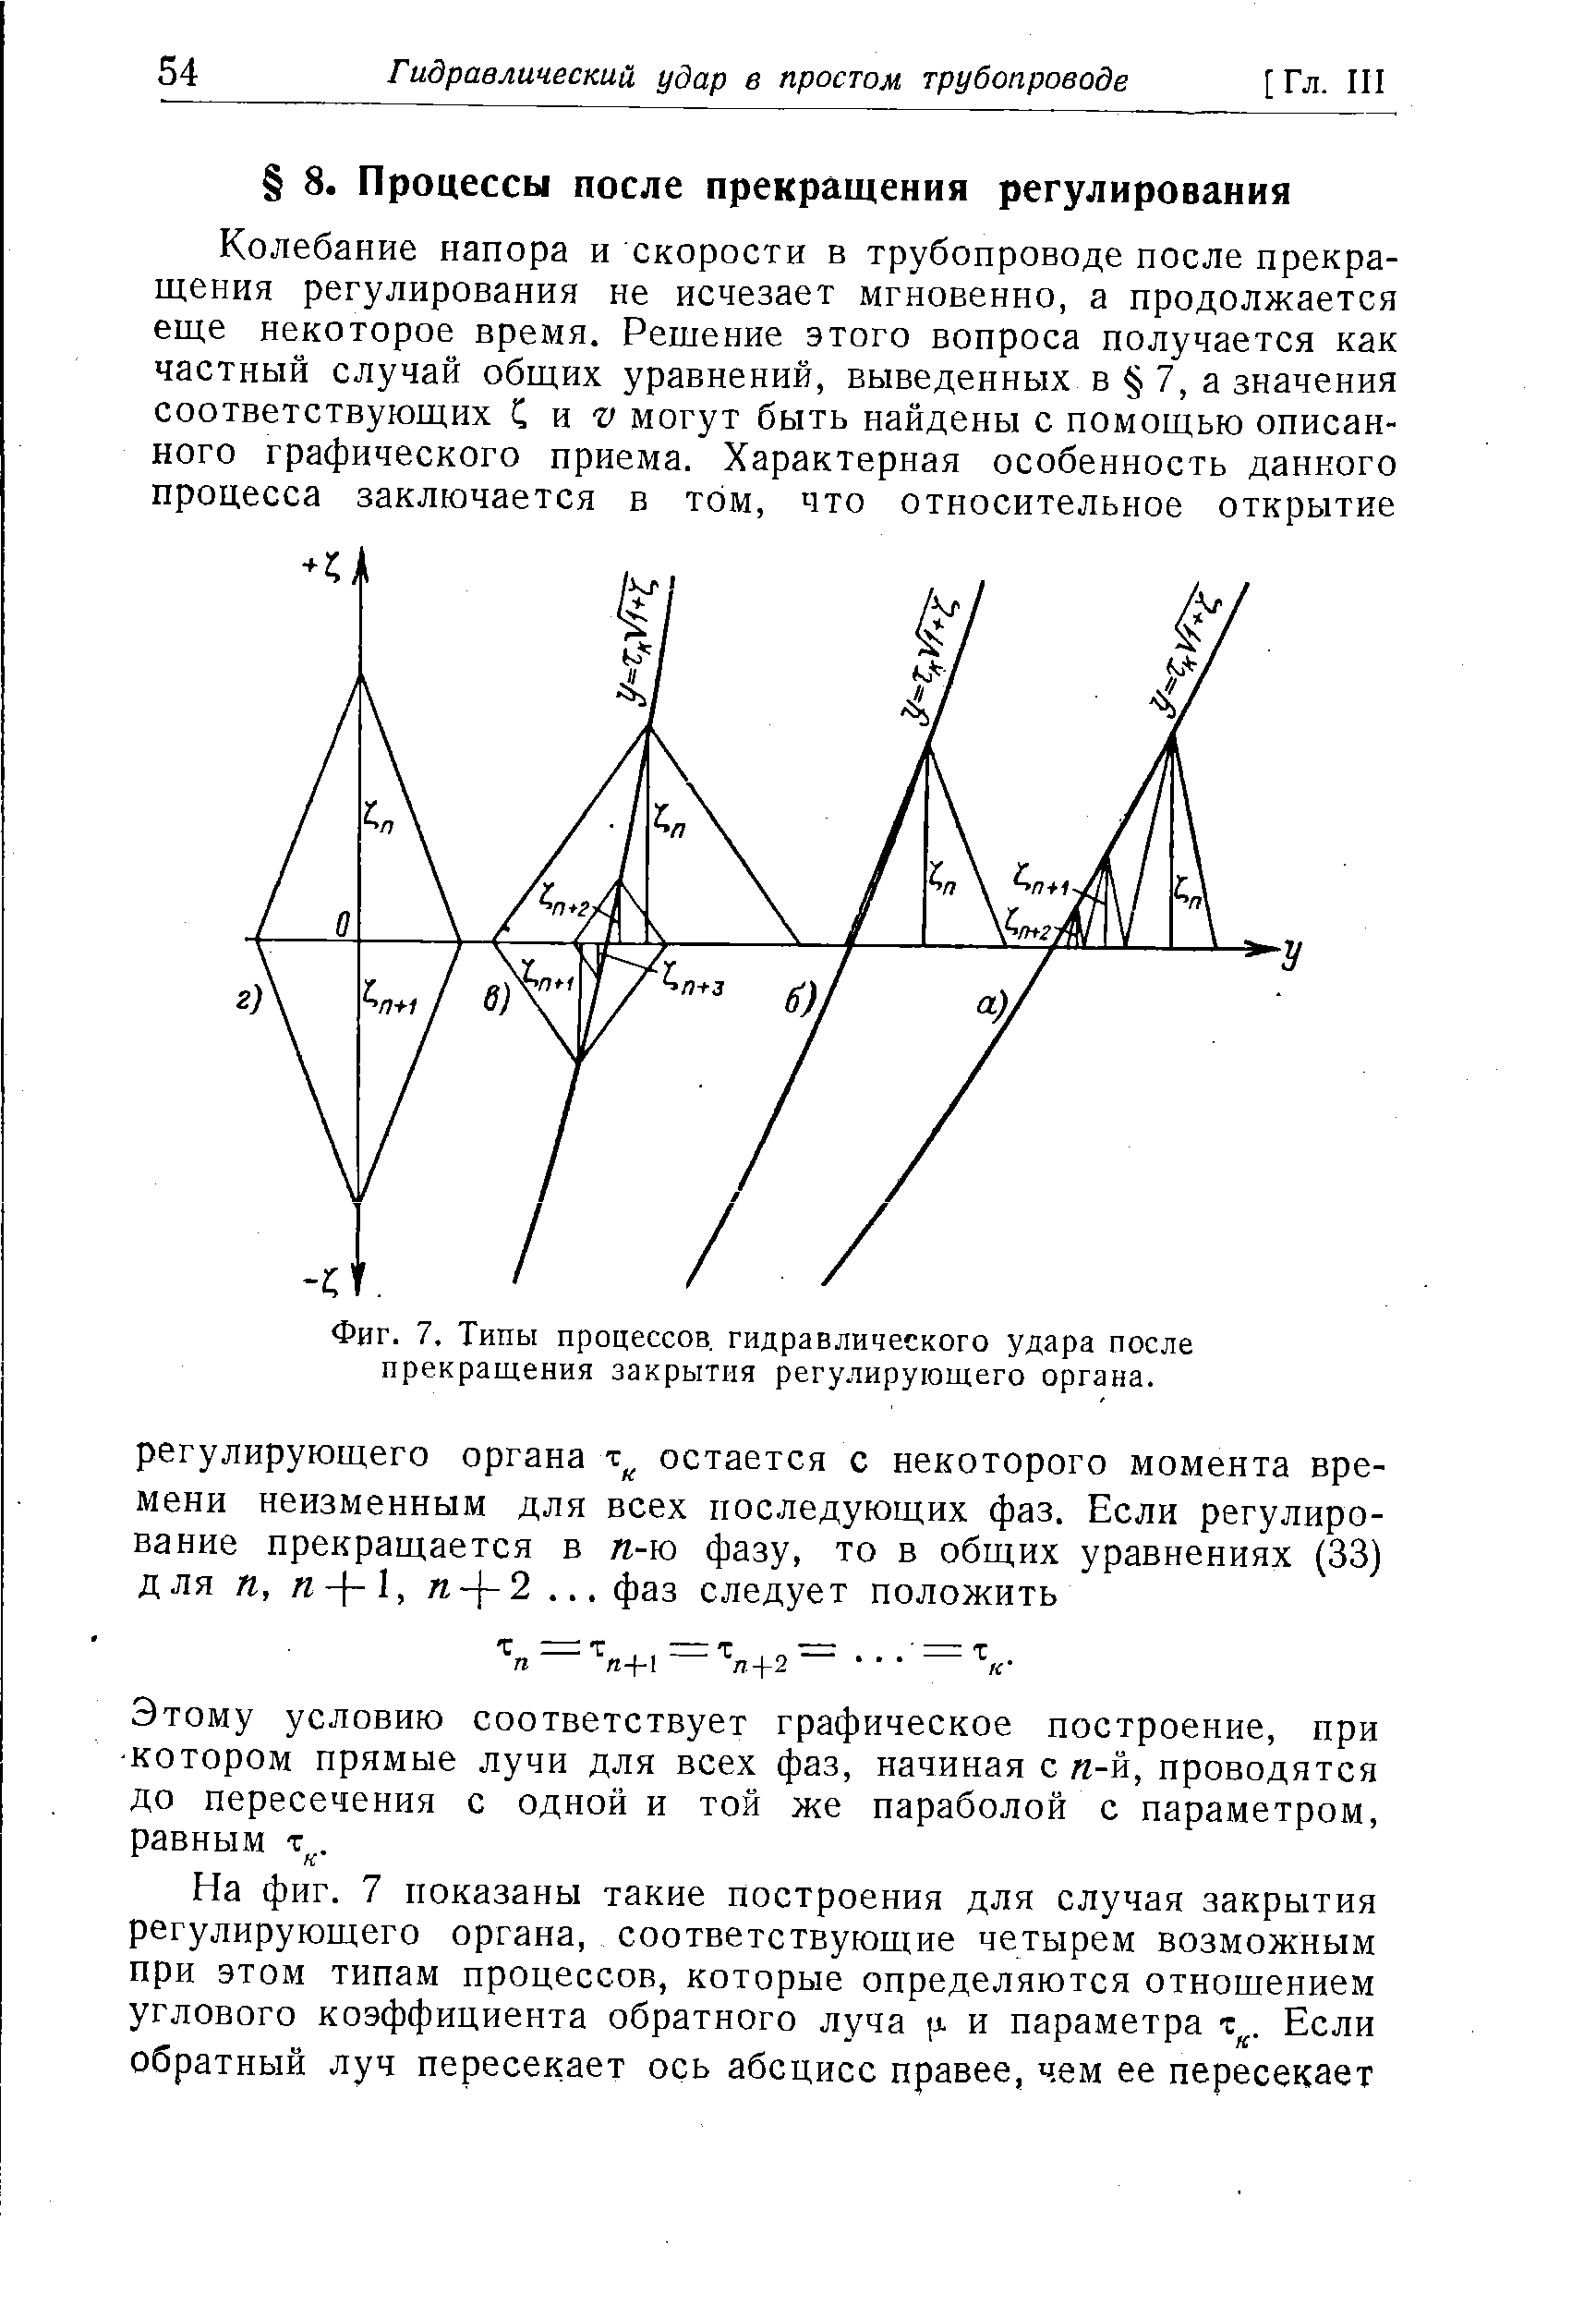 Этому условию соответствует графическое построение, при котором прямые лучи для всех фаз, начиная с я-й, проводятся до пересечения с одной и той же параболой с параметром, равным т .
